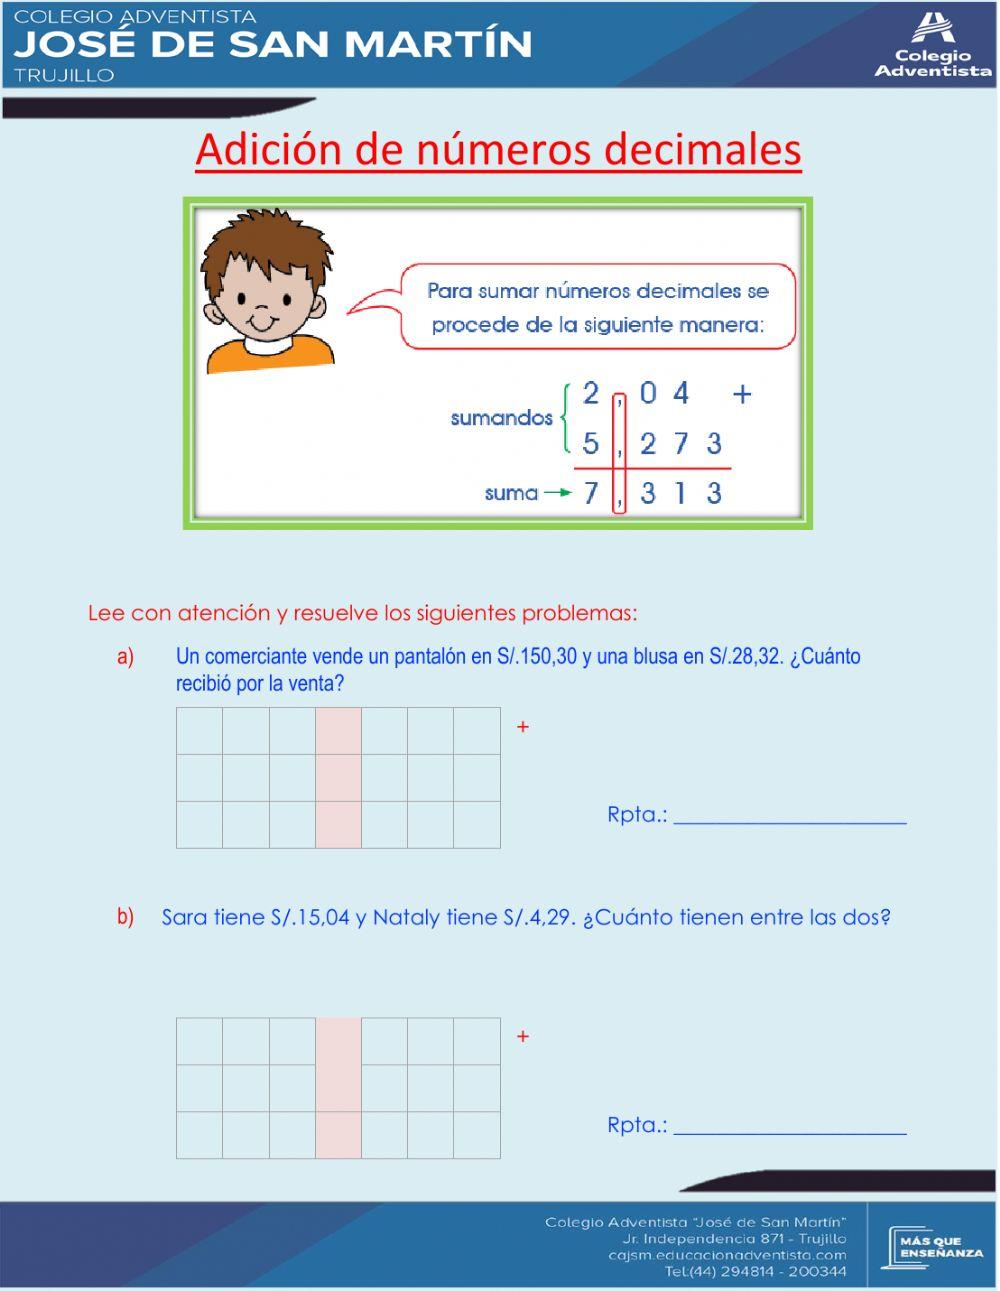 Adición de números decimales